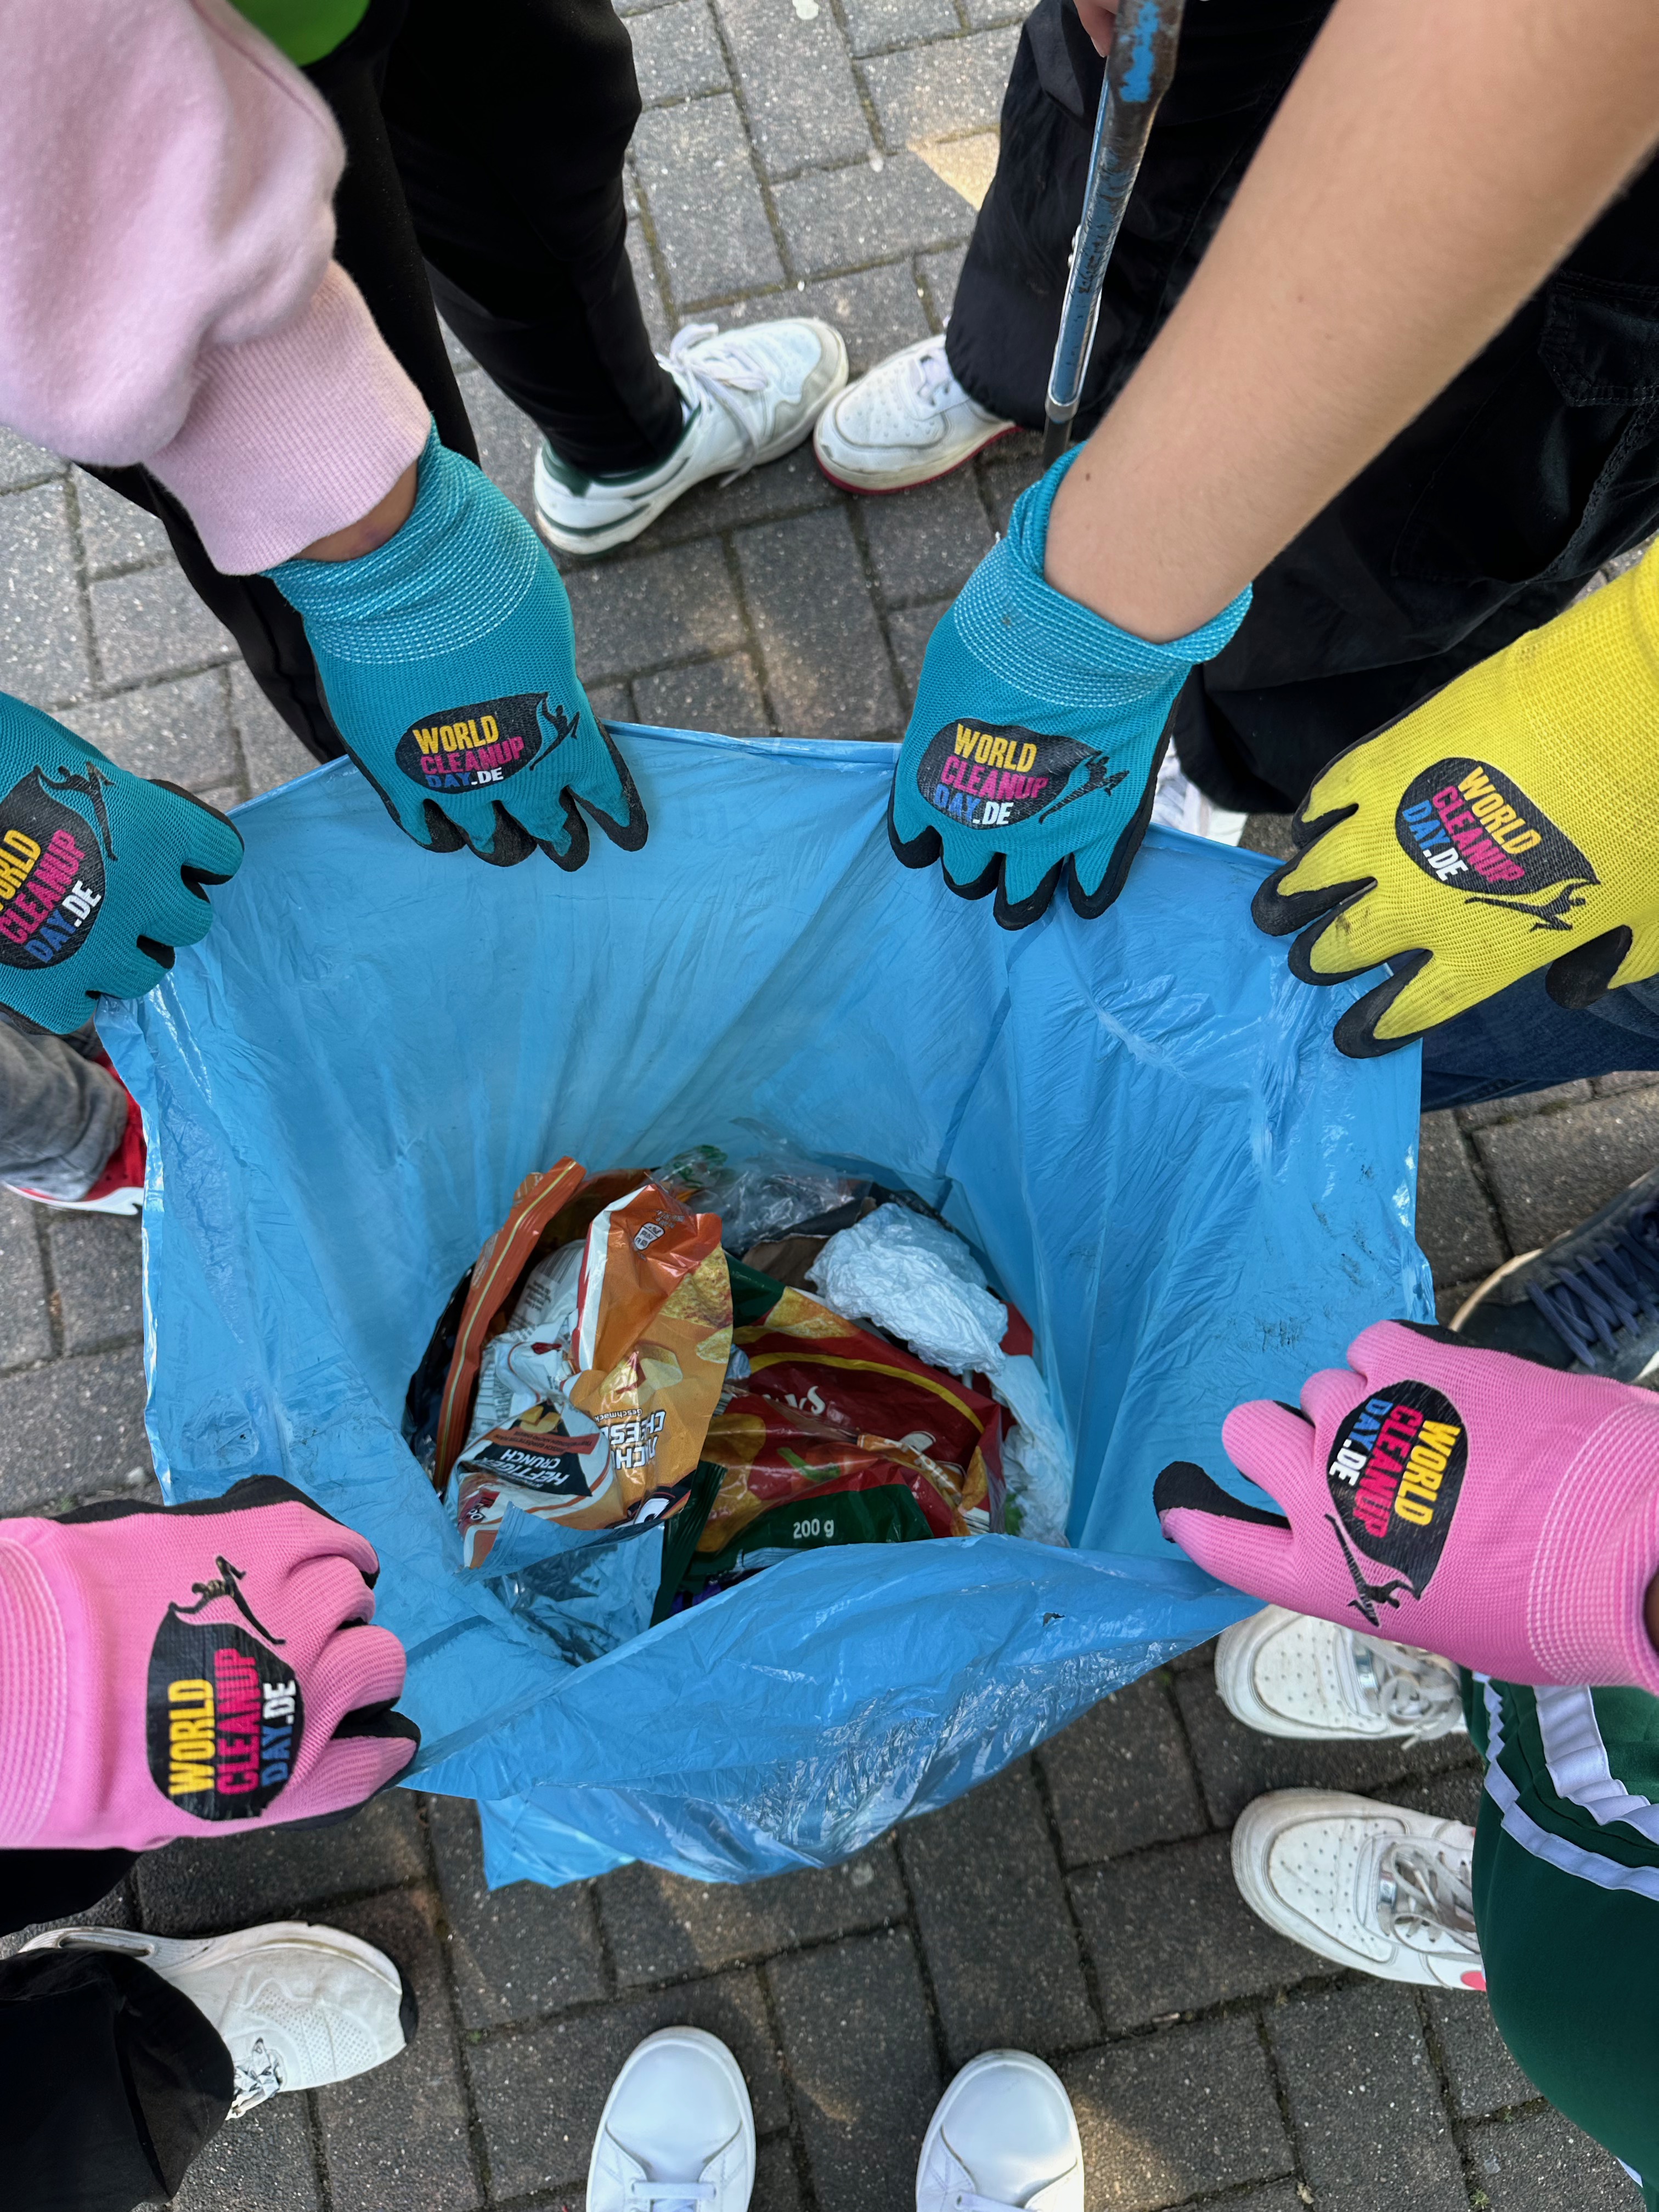 Schülerinnen und Schüler verdeutlichen mit ihrem Müllsack, dass in kurzer Zeit eine beachtliche Menge Müll gesammelt wurde. 